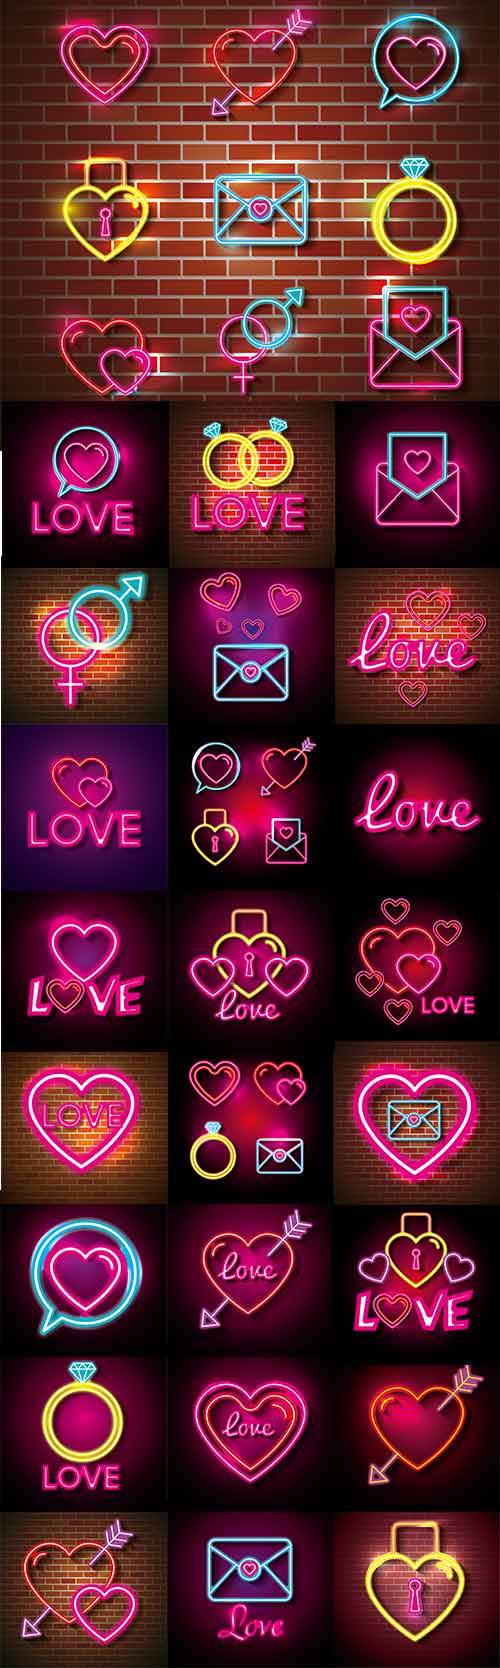 Неоновые иконки для влюблённых в векторе / Neon icons for lovers in vector